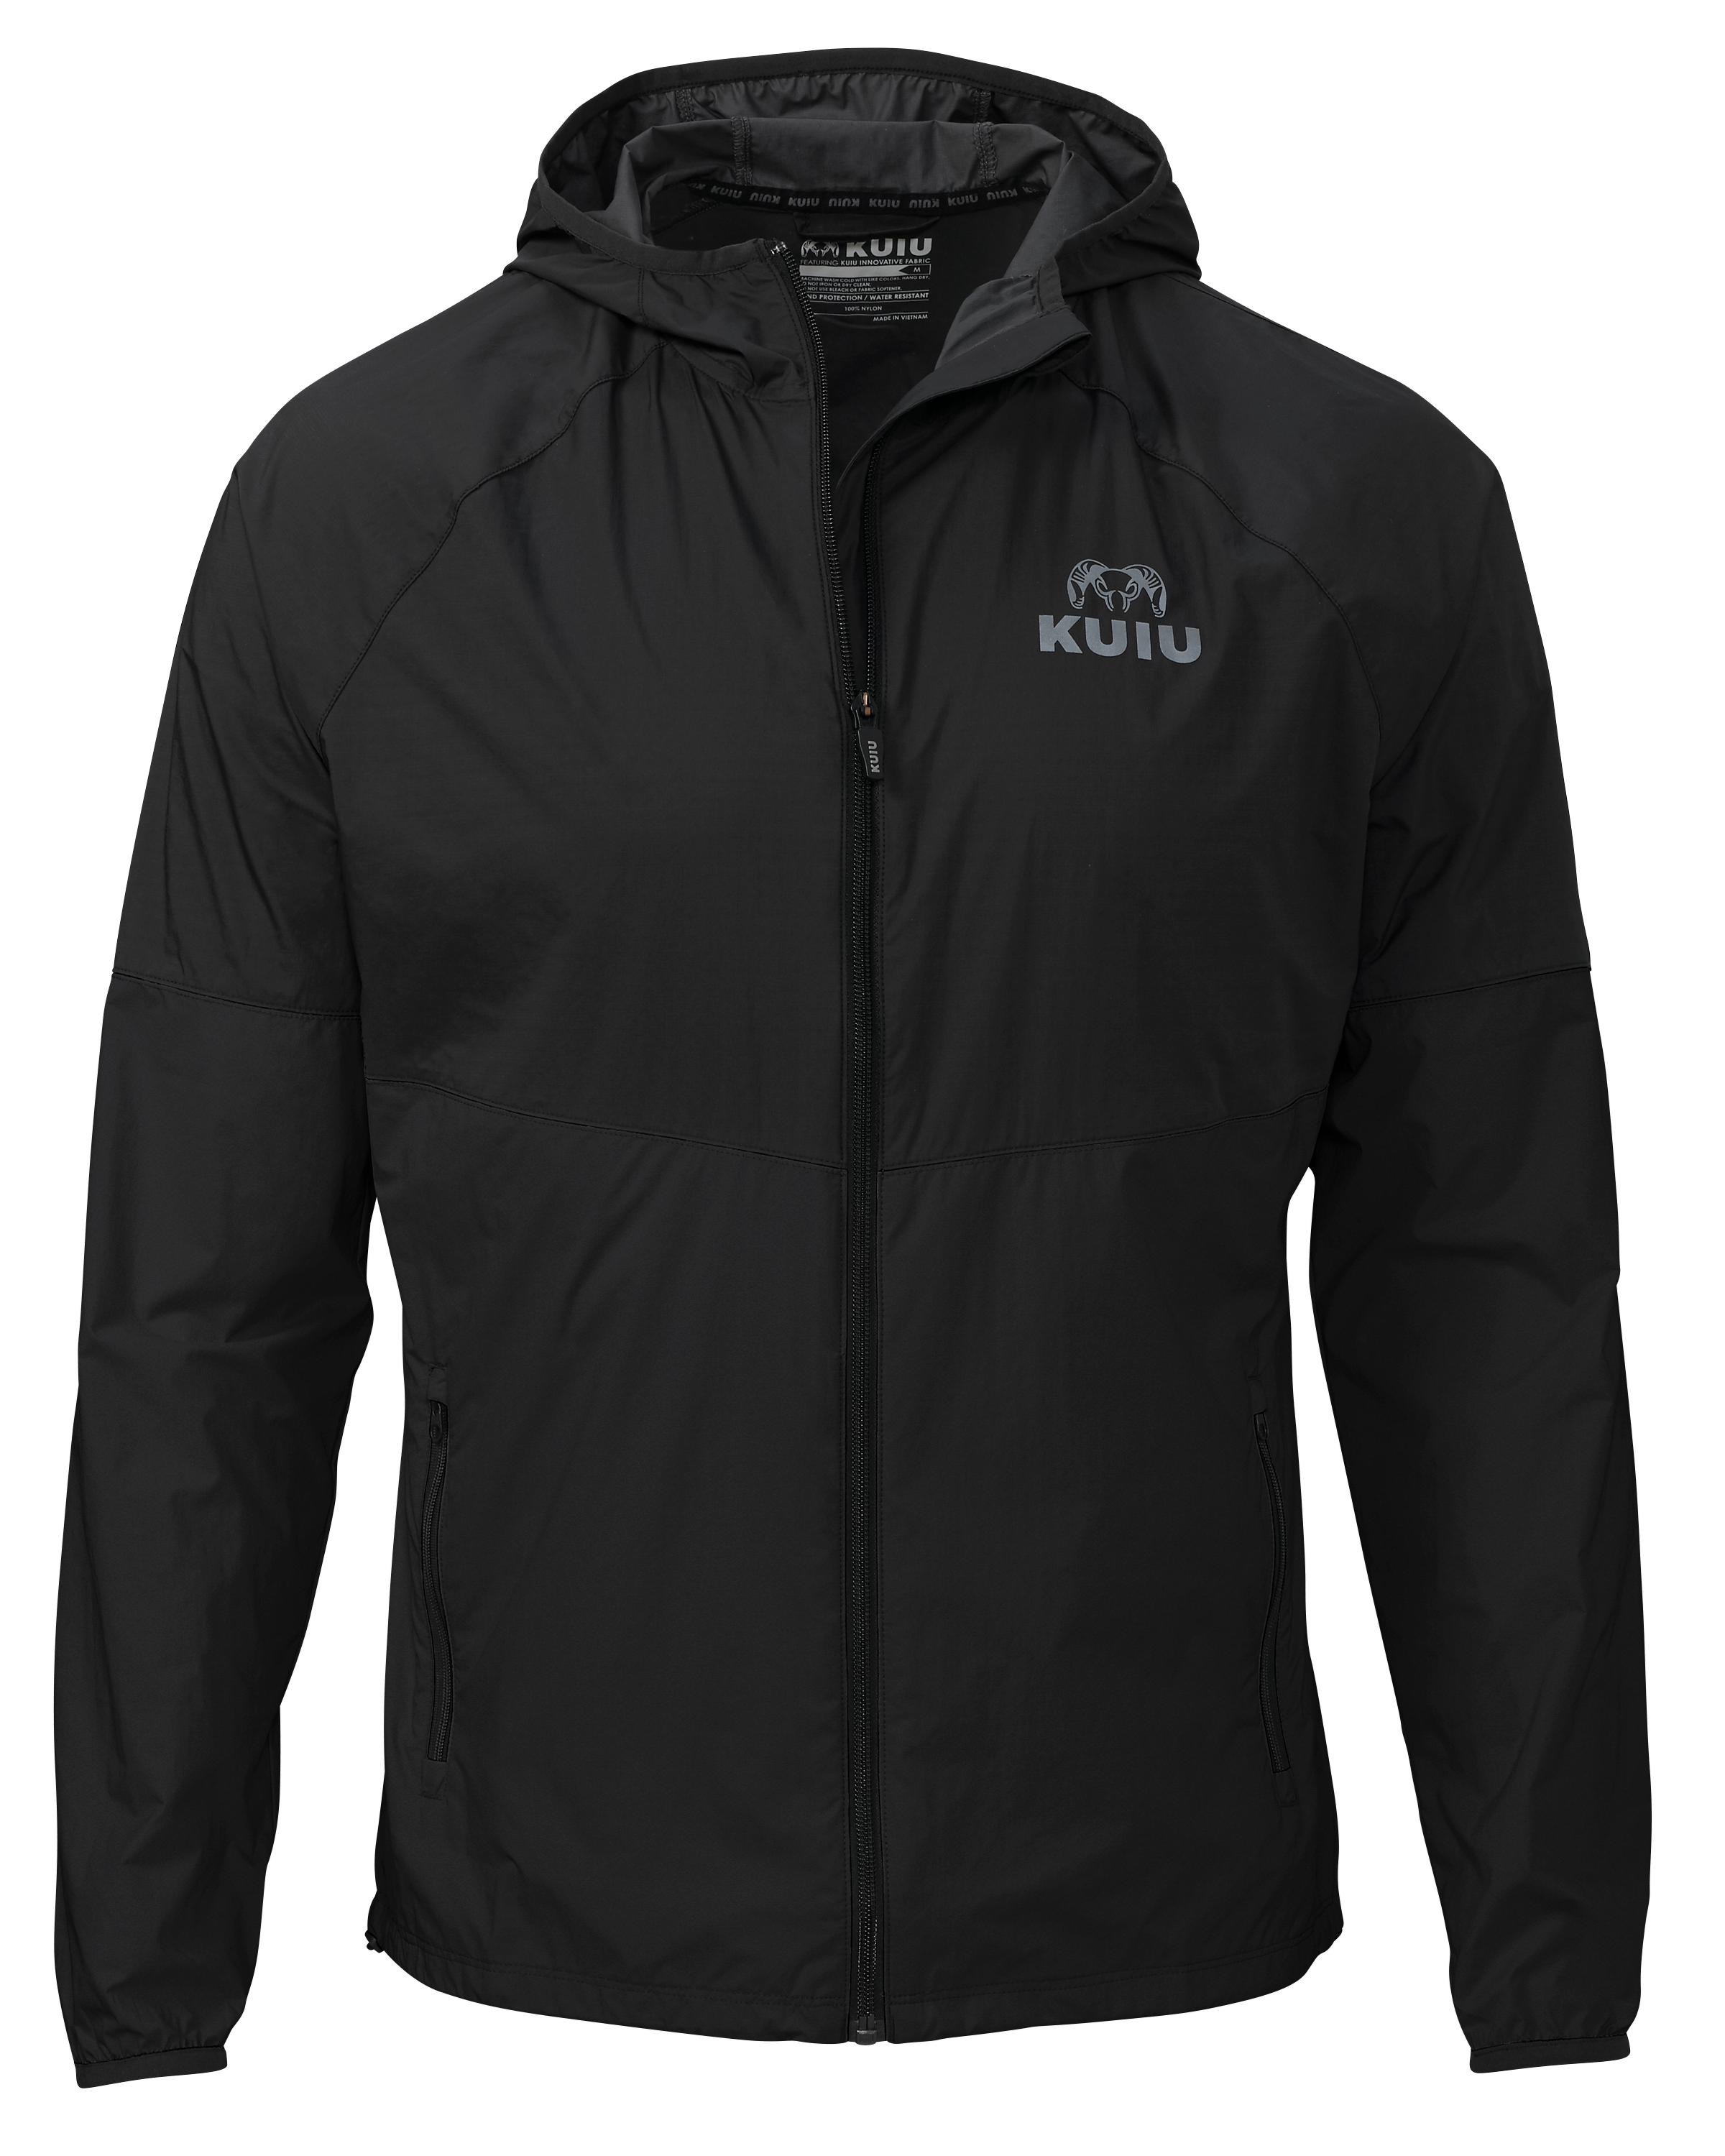 KUIU Training Tech Wind Jacket in Black | Size 2XL